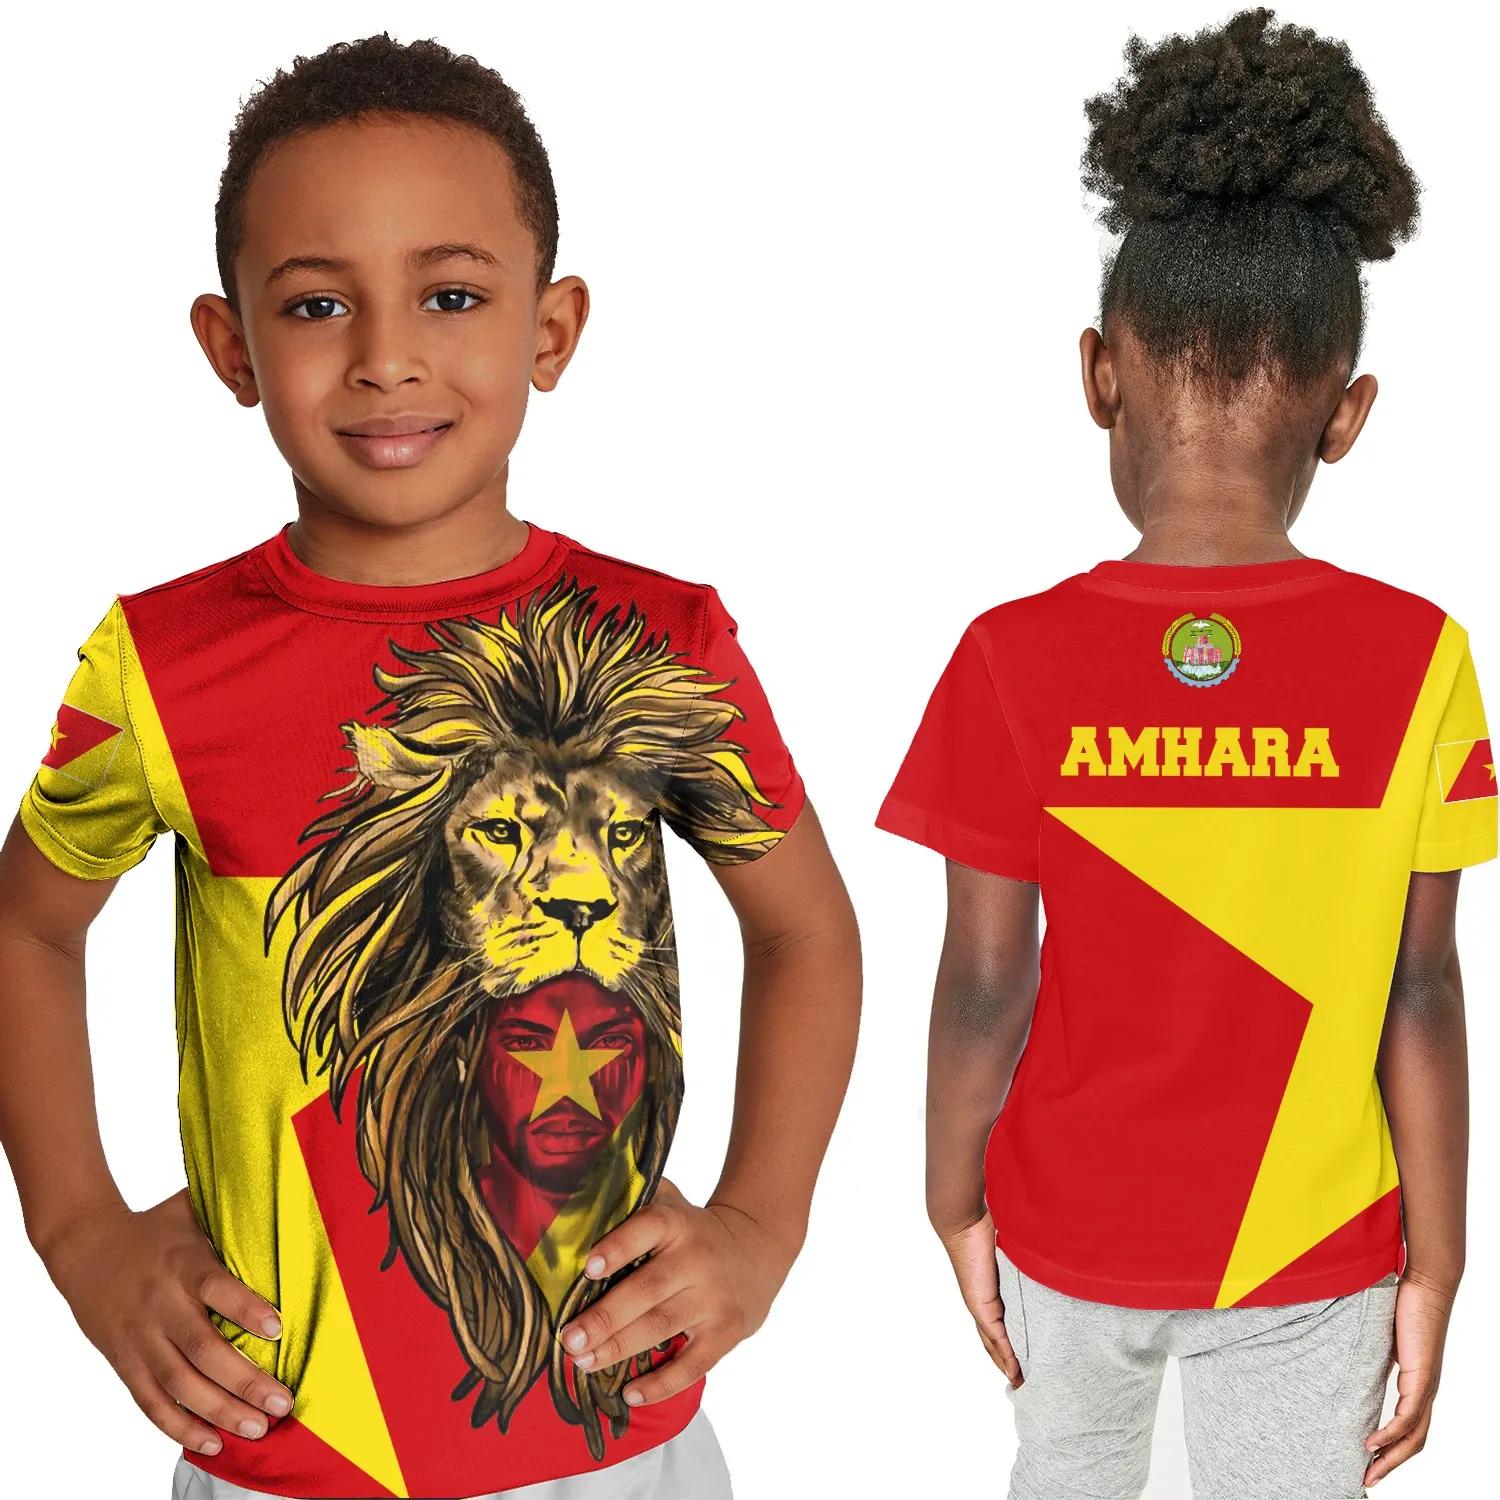 Amhara T-shirt Kid, Amhara Flag Men Lion A10